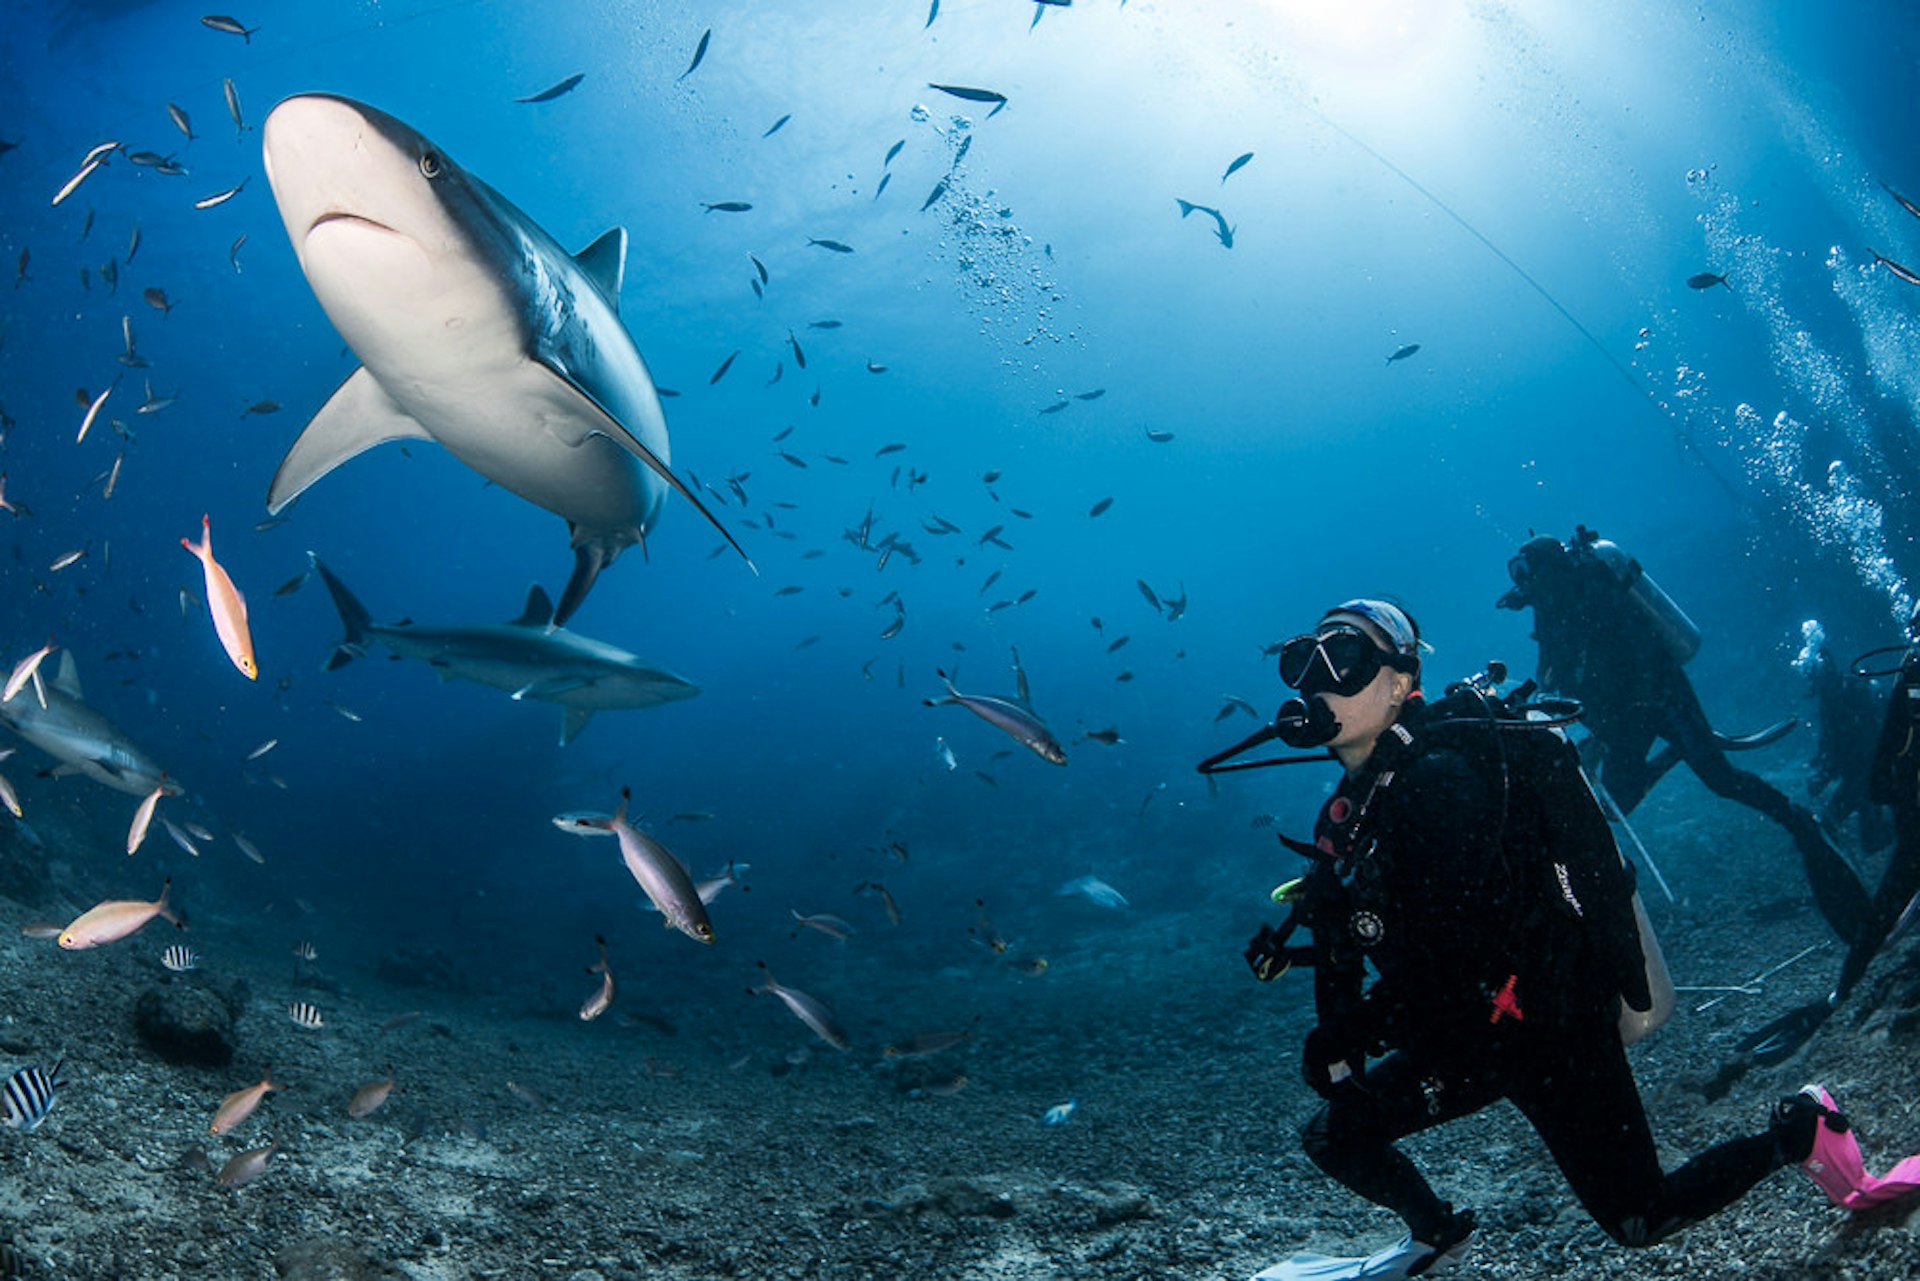 A diver observes a passing shark